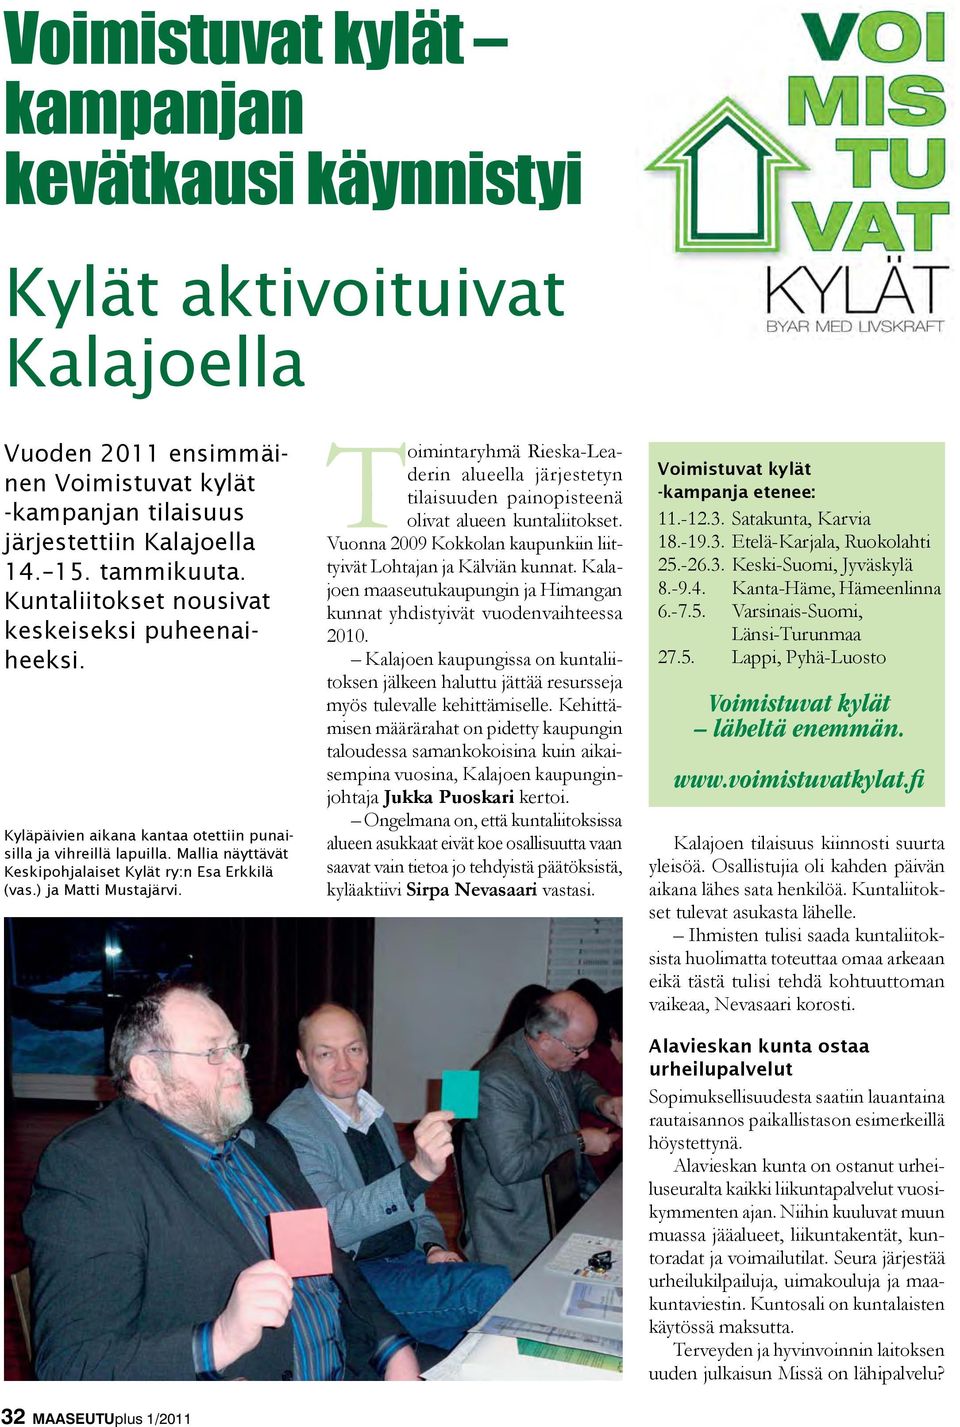 ) ja Matti Mustajärvi. Toimintaryhmä Rieska-Leaderin alueella järjestetyn tilaisuuden painopisteenä olivat alueen kuntaliitokset. Vuonna 2009 Kokkolan kaupunkiin liittyivät Lohtajan ja Kälviän kunnat.